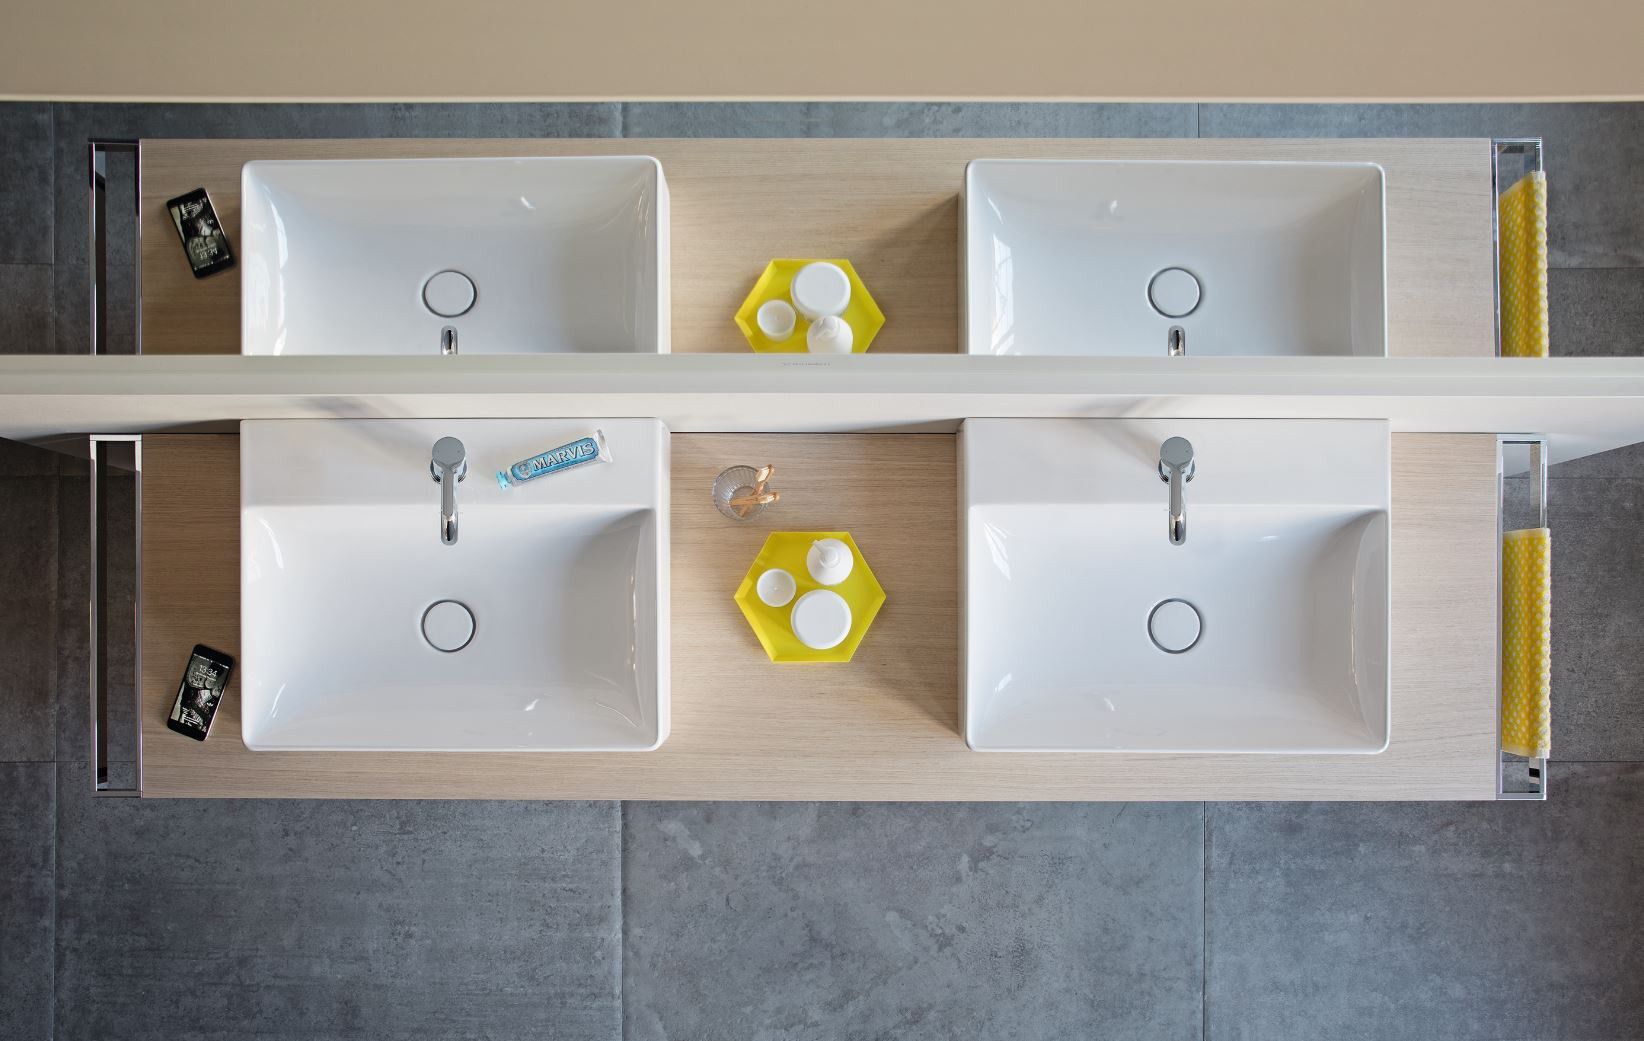 Diseño de baños DuraSquare Duravit, eficiencia y calidad garantizadas. Visítanos en las tiendas Duran Palma, Clavià o Alcudia, expertos en baños de diseño modernos en Mallorca